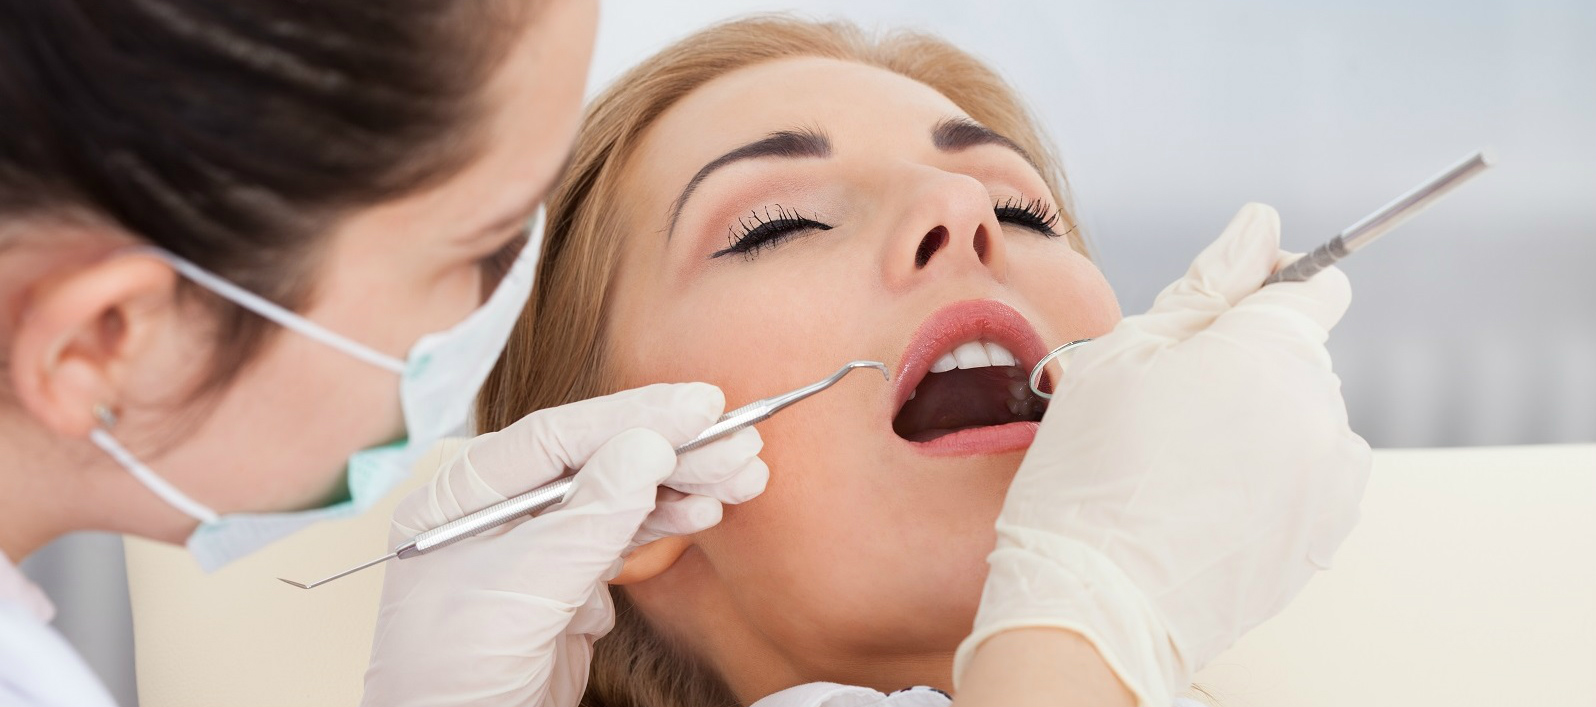 лечение зубов под наркозом - без стресса, боли и напряжения